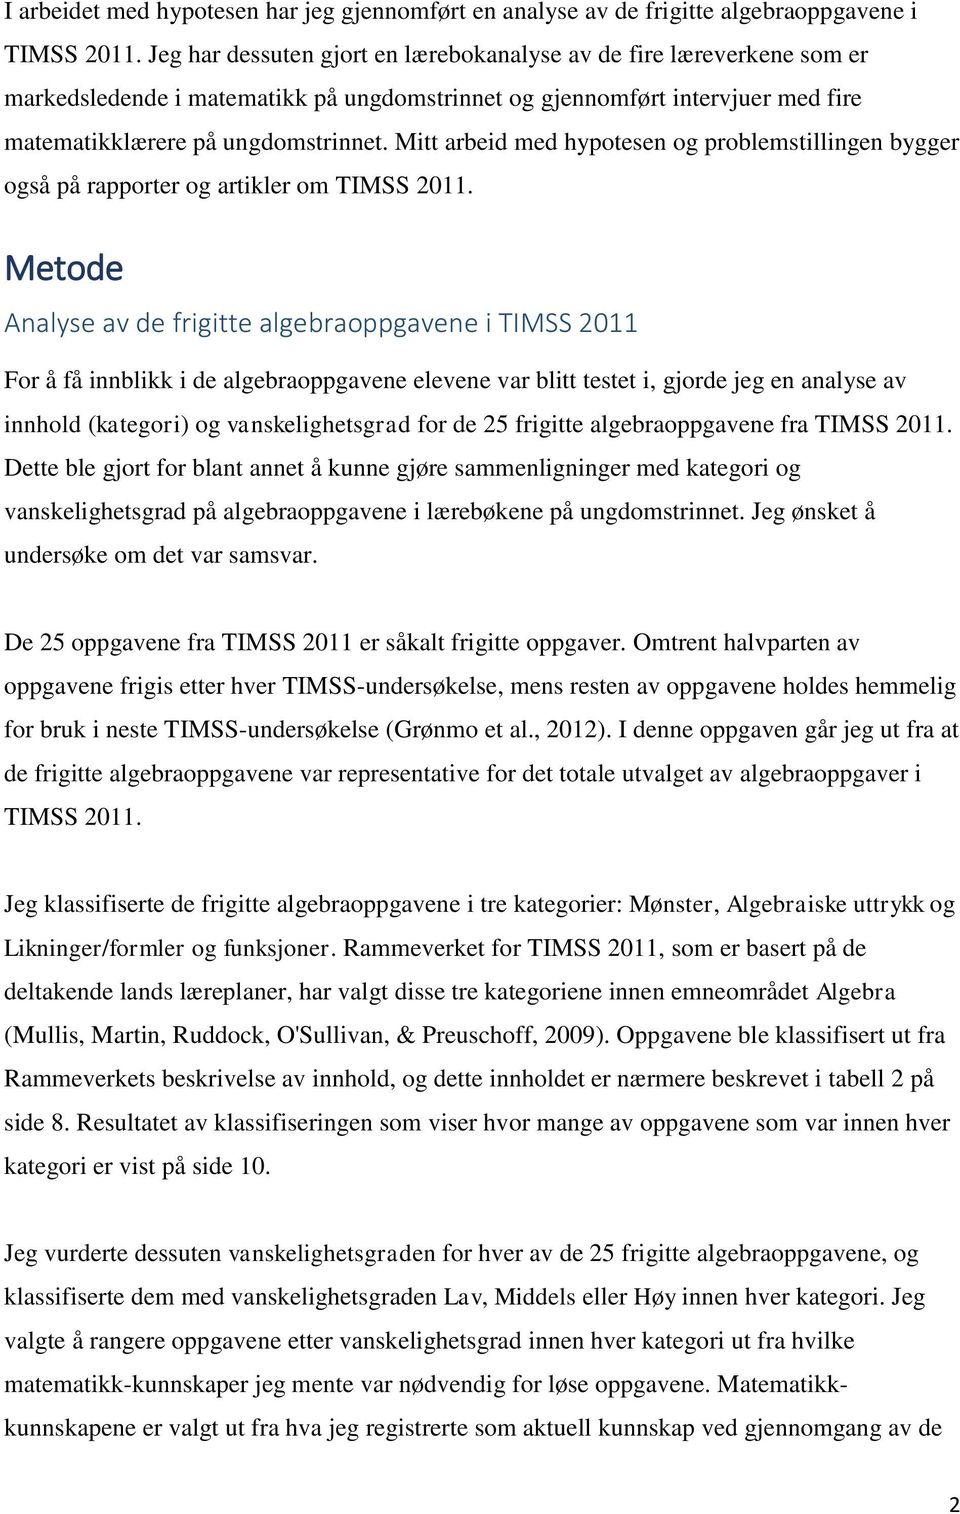 Mitt arbeid med hypotesen og problemstillingen bygger også på rapporter og artikler om TIMSS 2011.